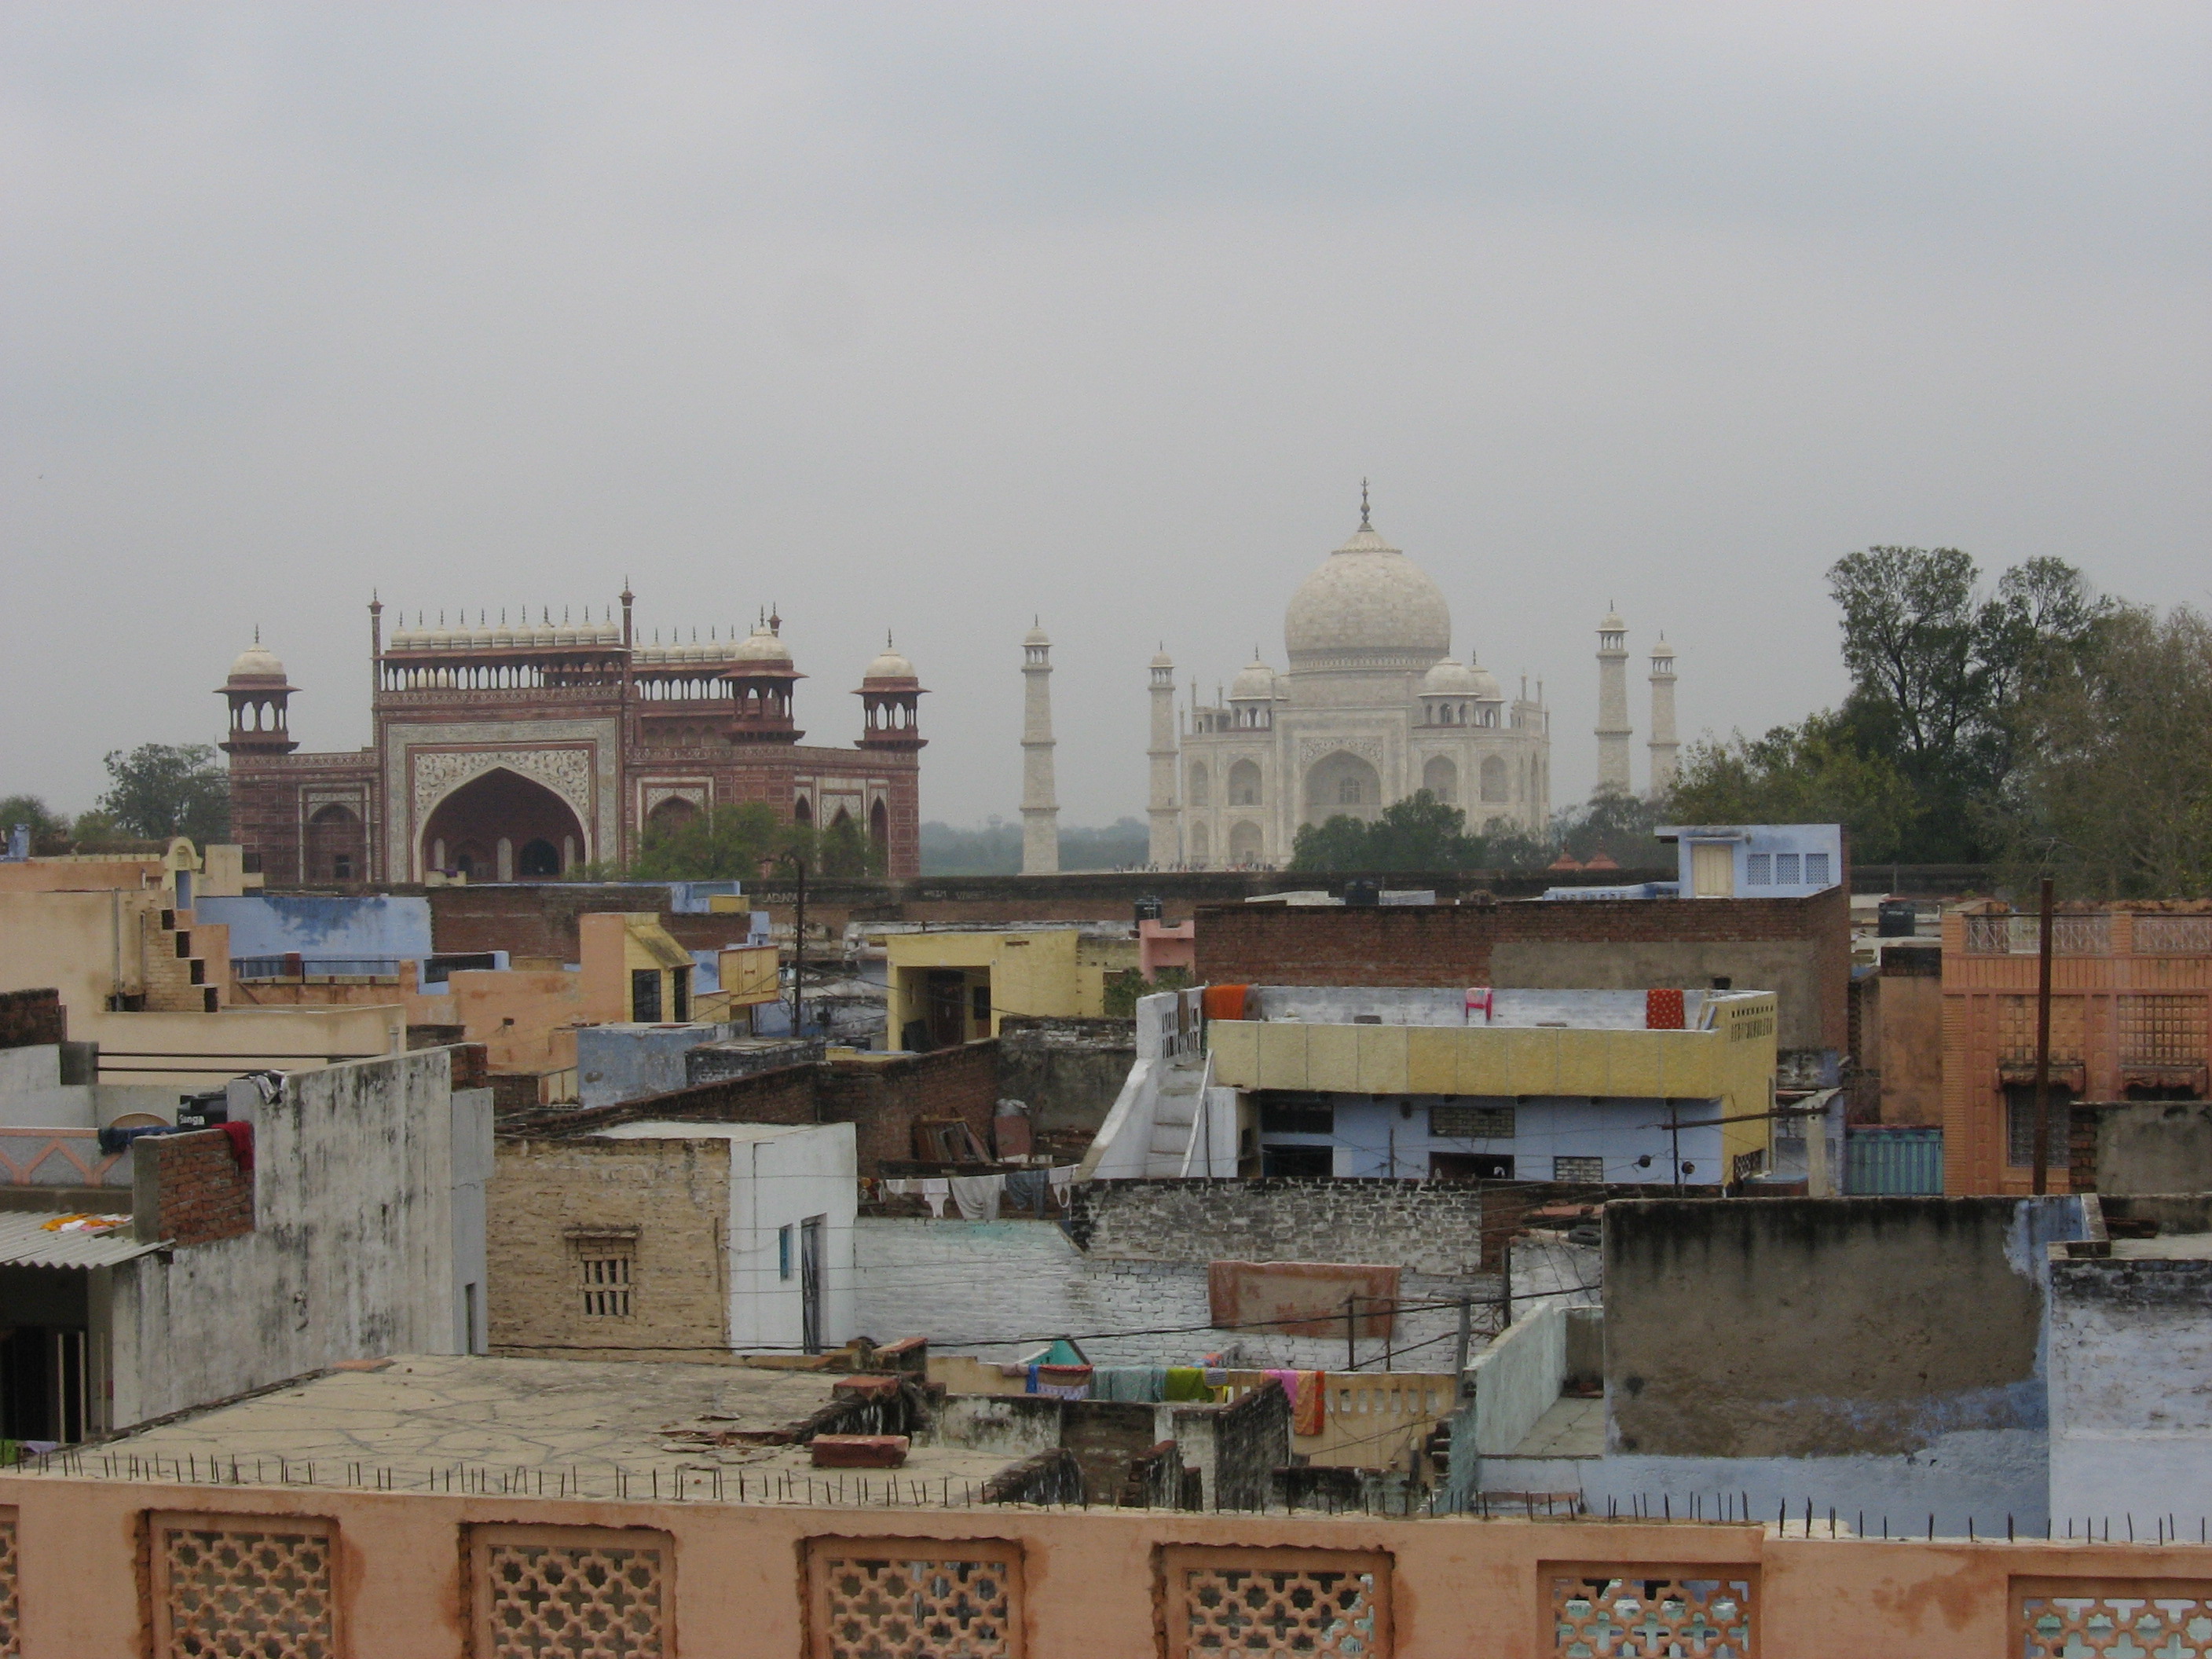 Taj Mahal su slum